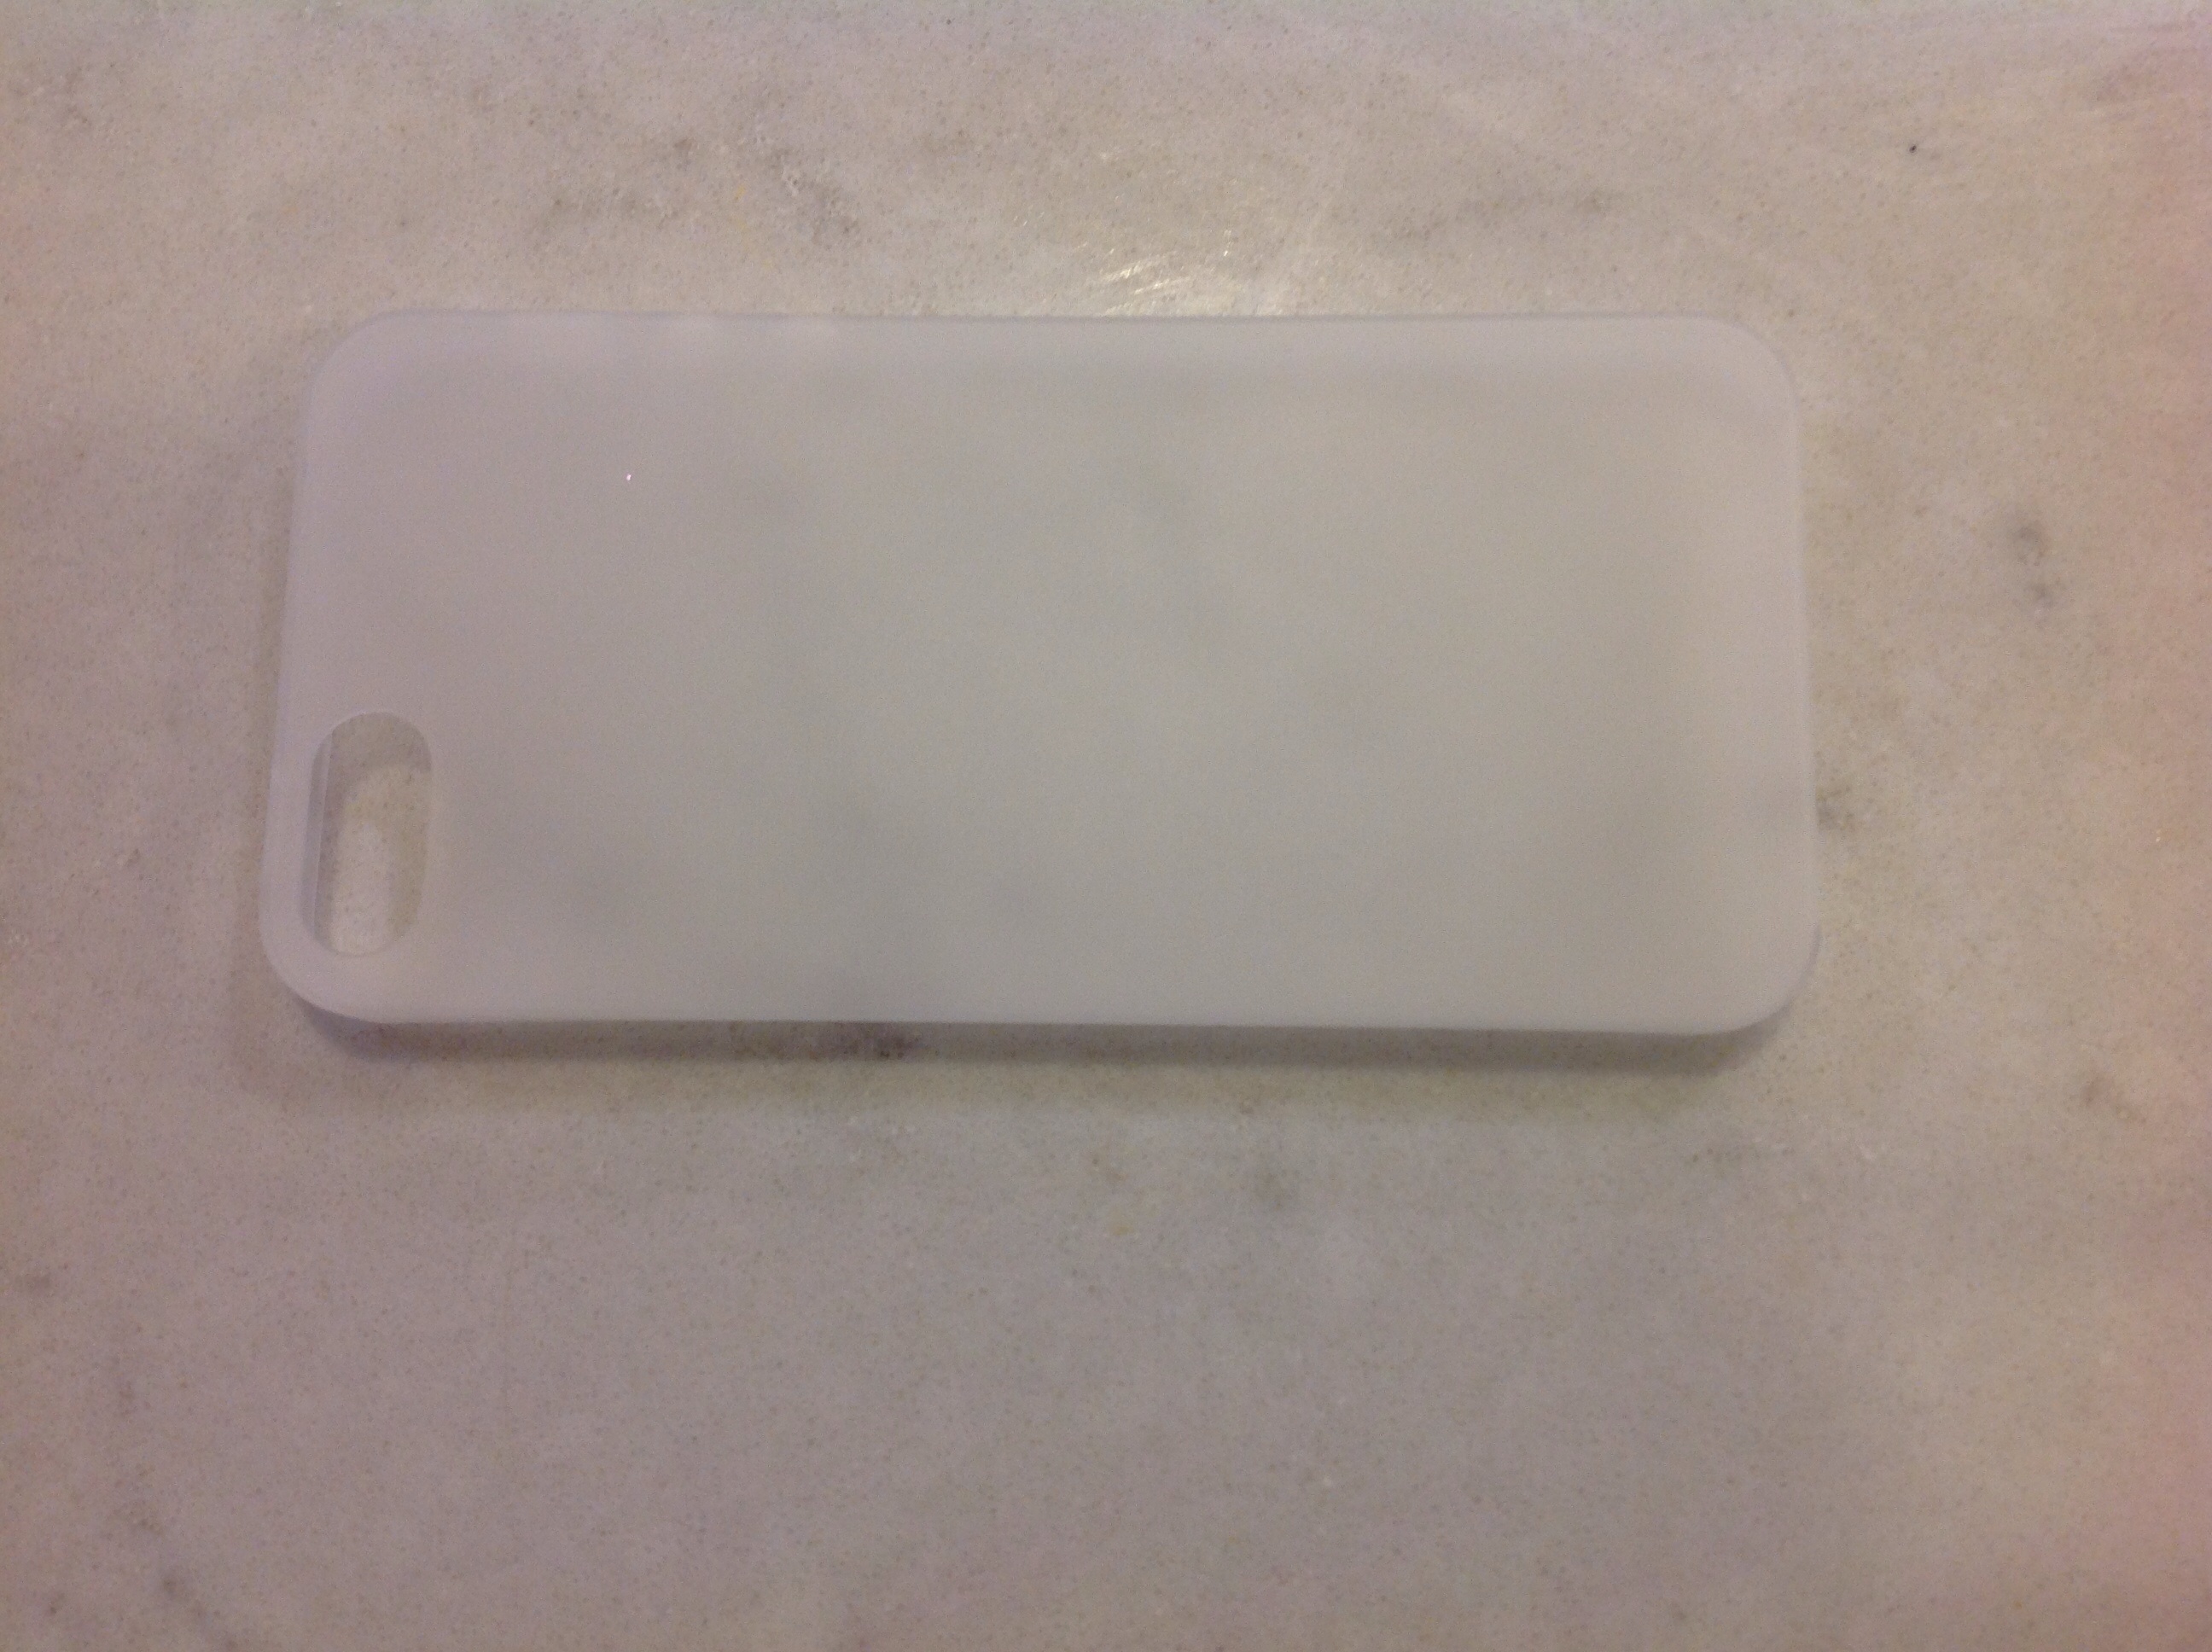 Plastic clip on iPhone case